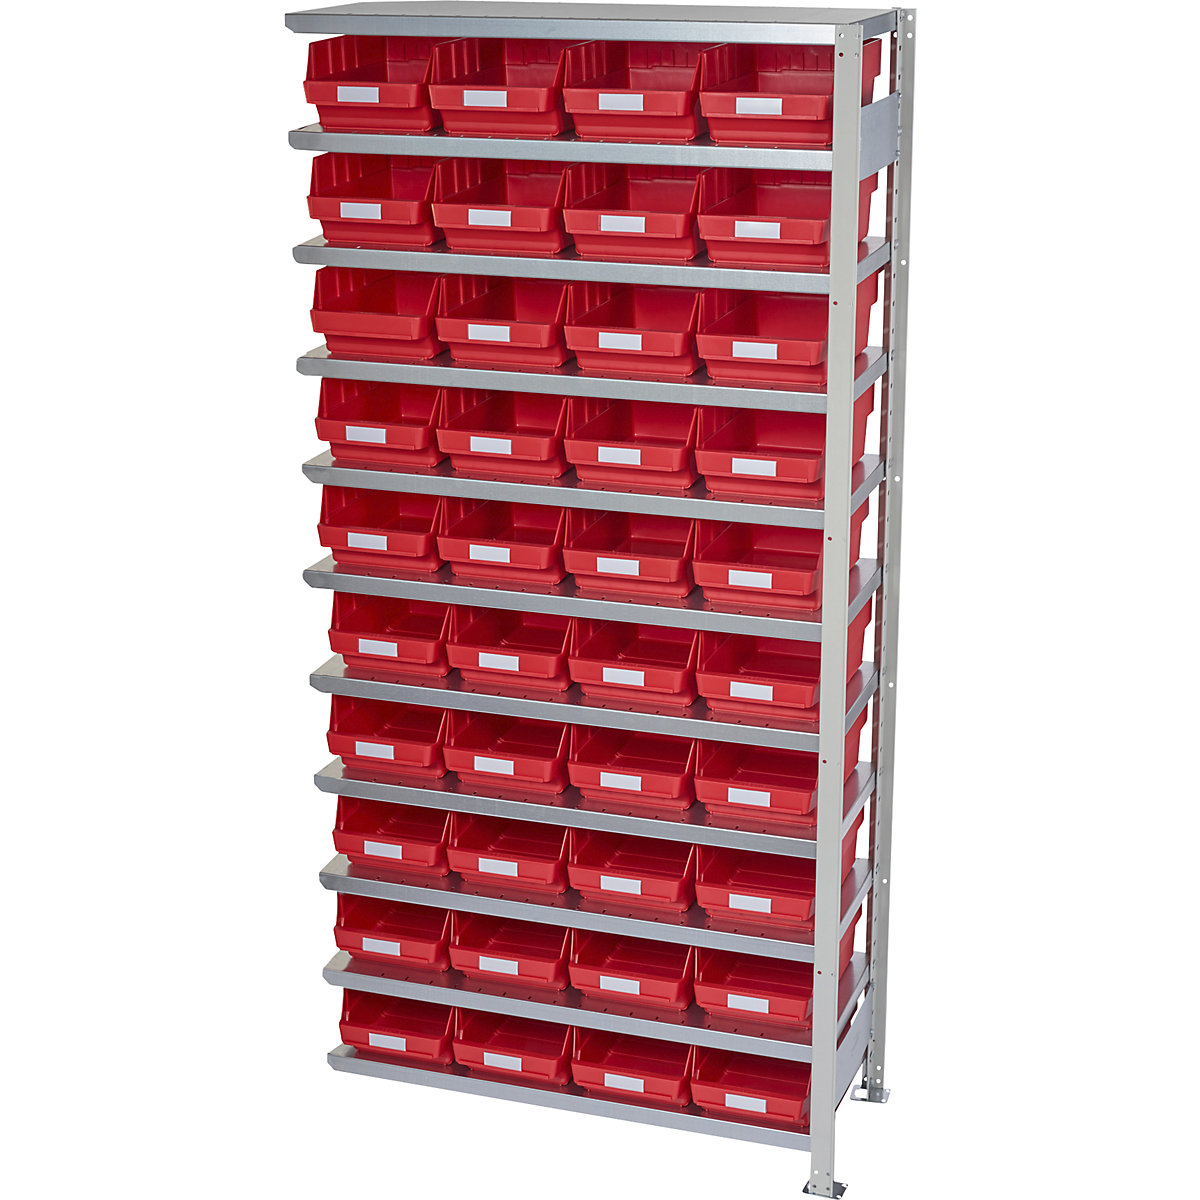 Estante de encaixar com caixas para estante – STEMO, altura da estante 2100 mm, estante adicional, profundidade 400 mm. 40 caixas vermelhas-40